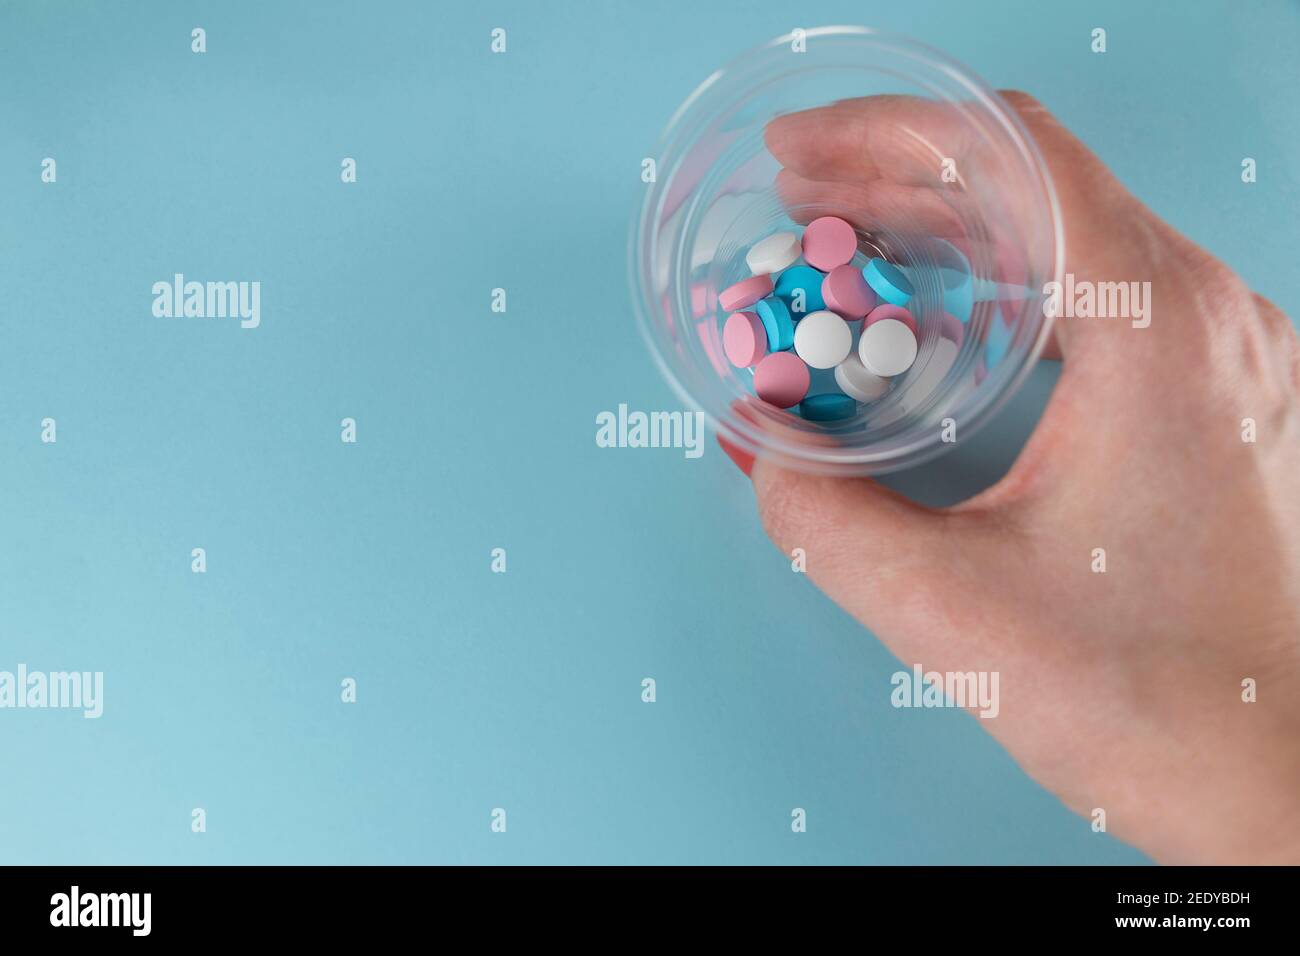 Medizin und Pillen. Weibliche Hand hält Pillen in einem kleinen Plastikbecher Medizin.Multi-farbige Medikamente auf pastellblauem Hintergrund. Stockfoto